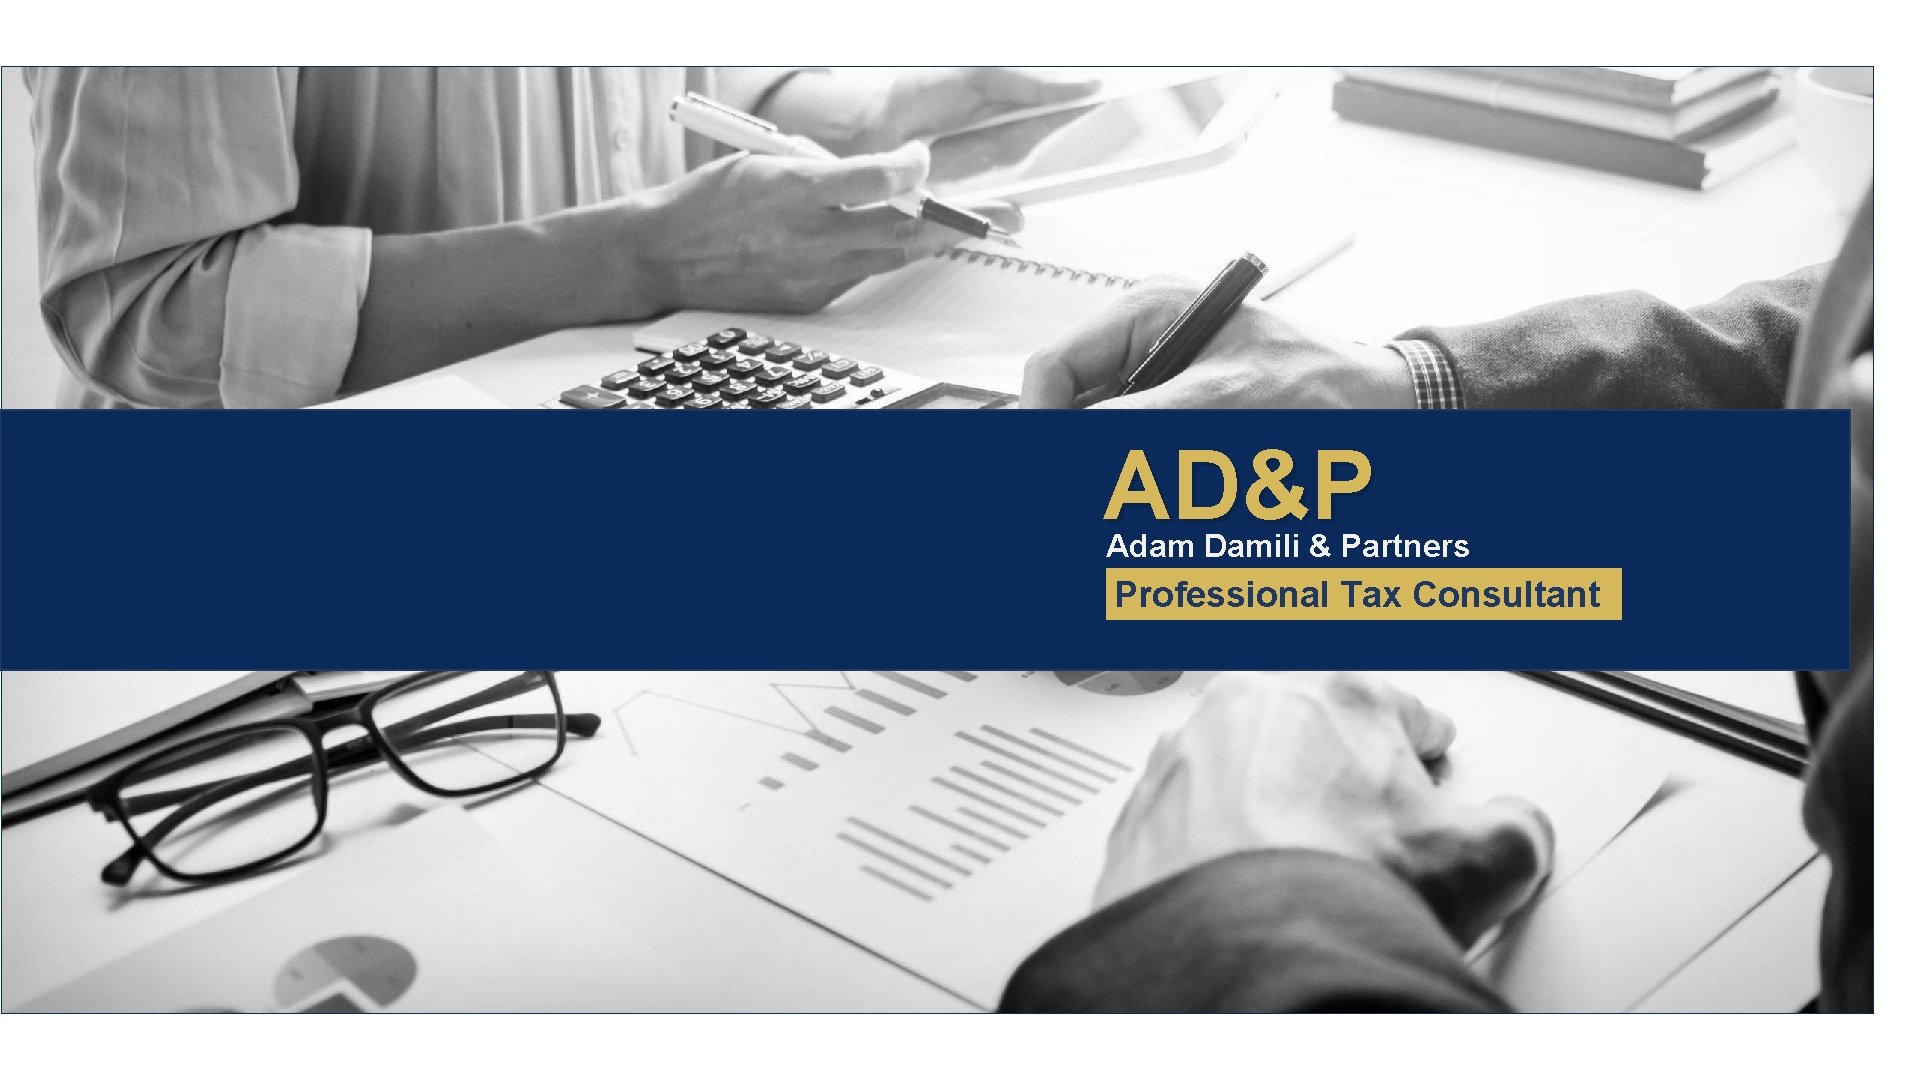 AD&P Adam Damili & Partners Professional Tax Consultant 